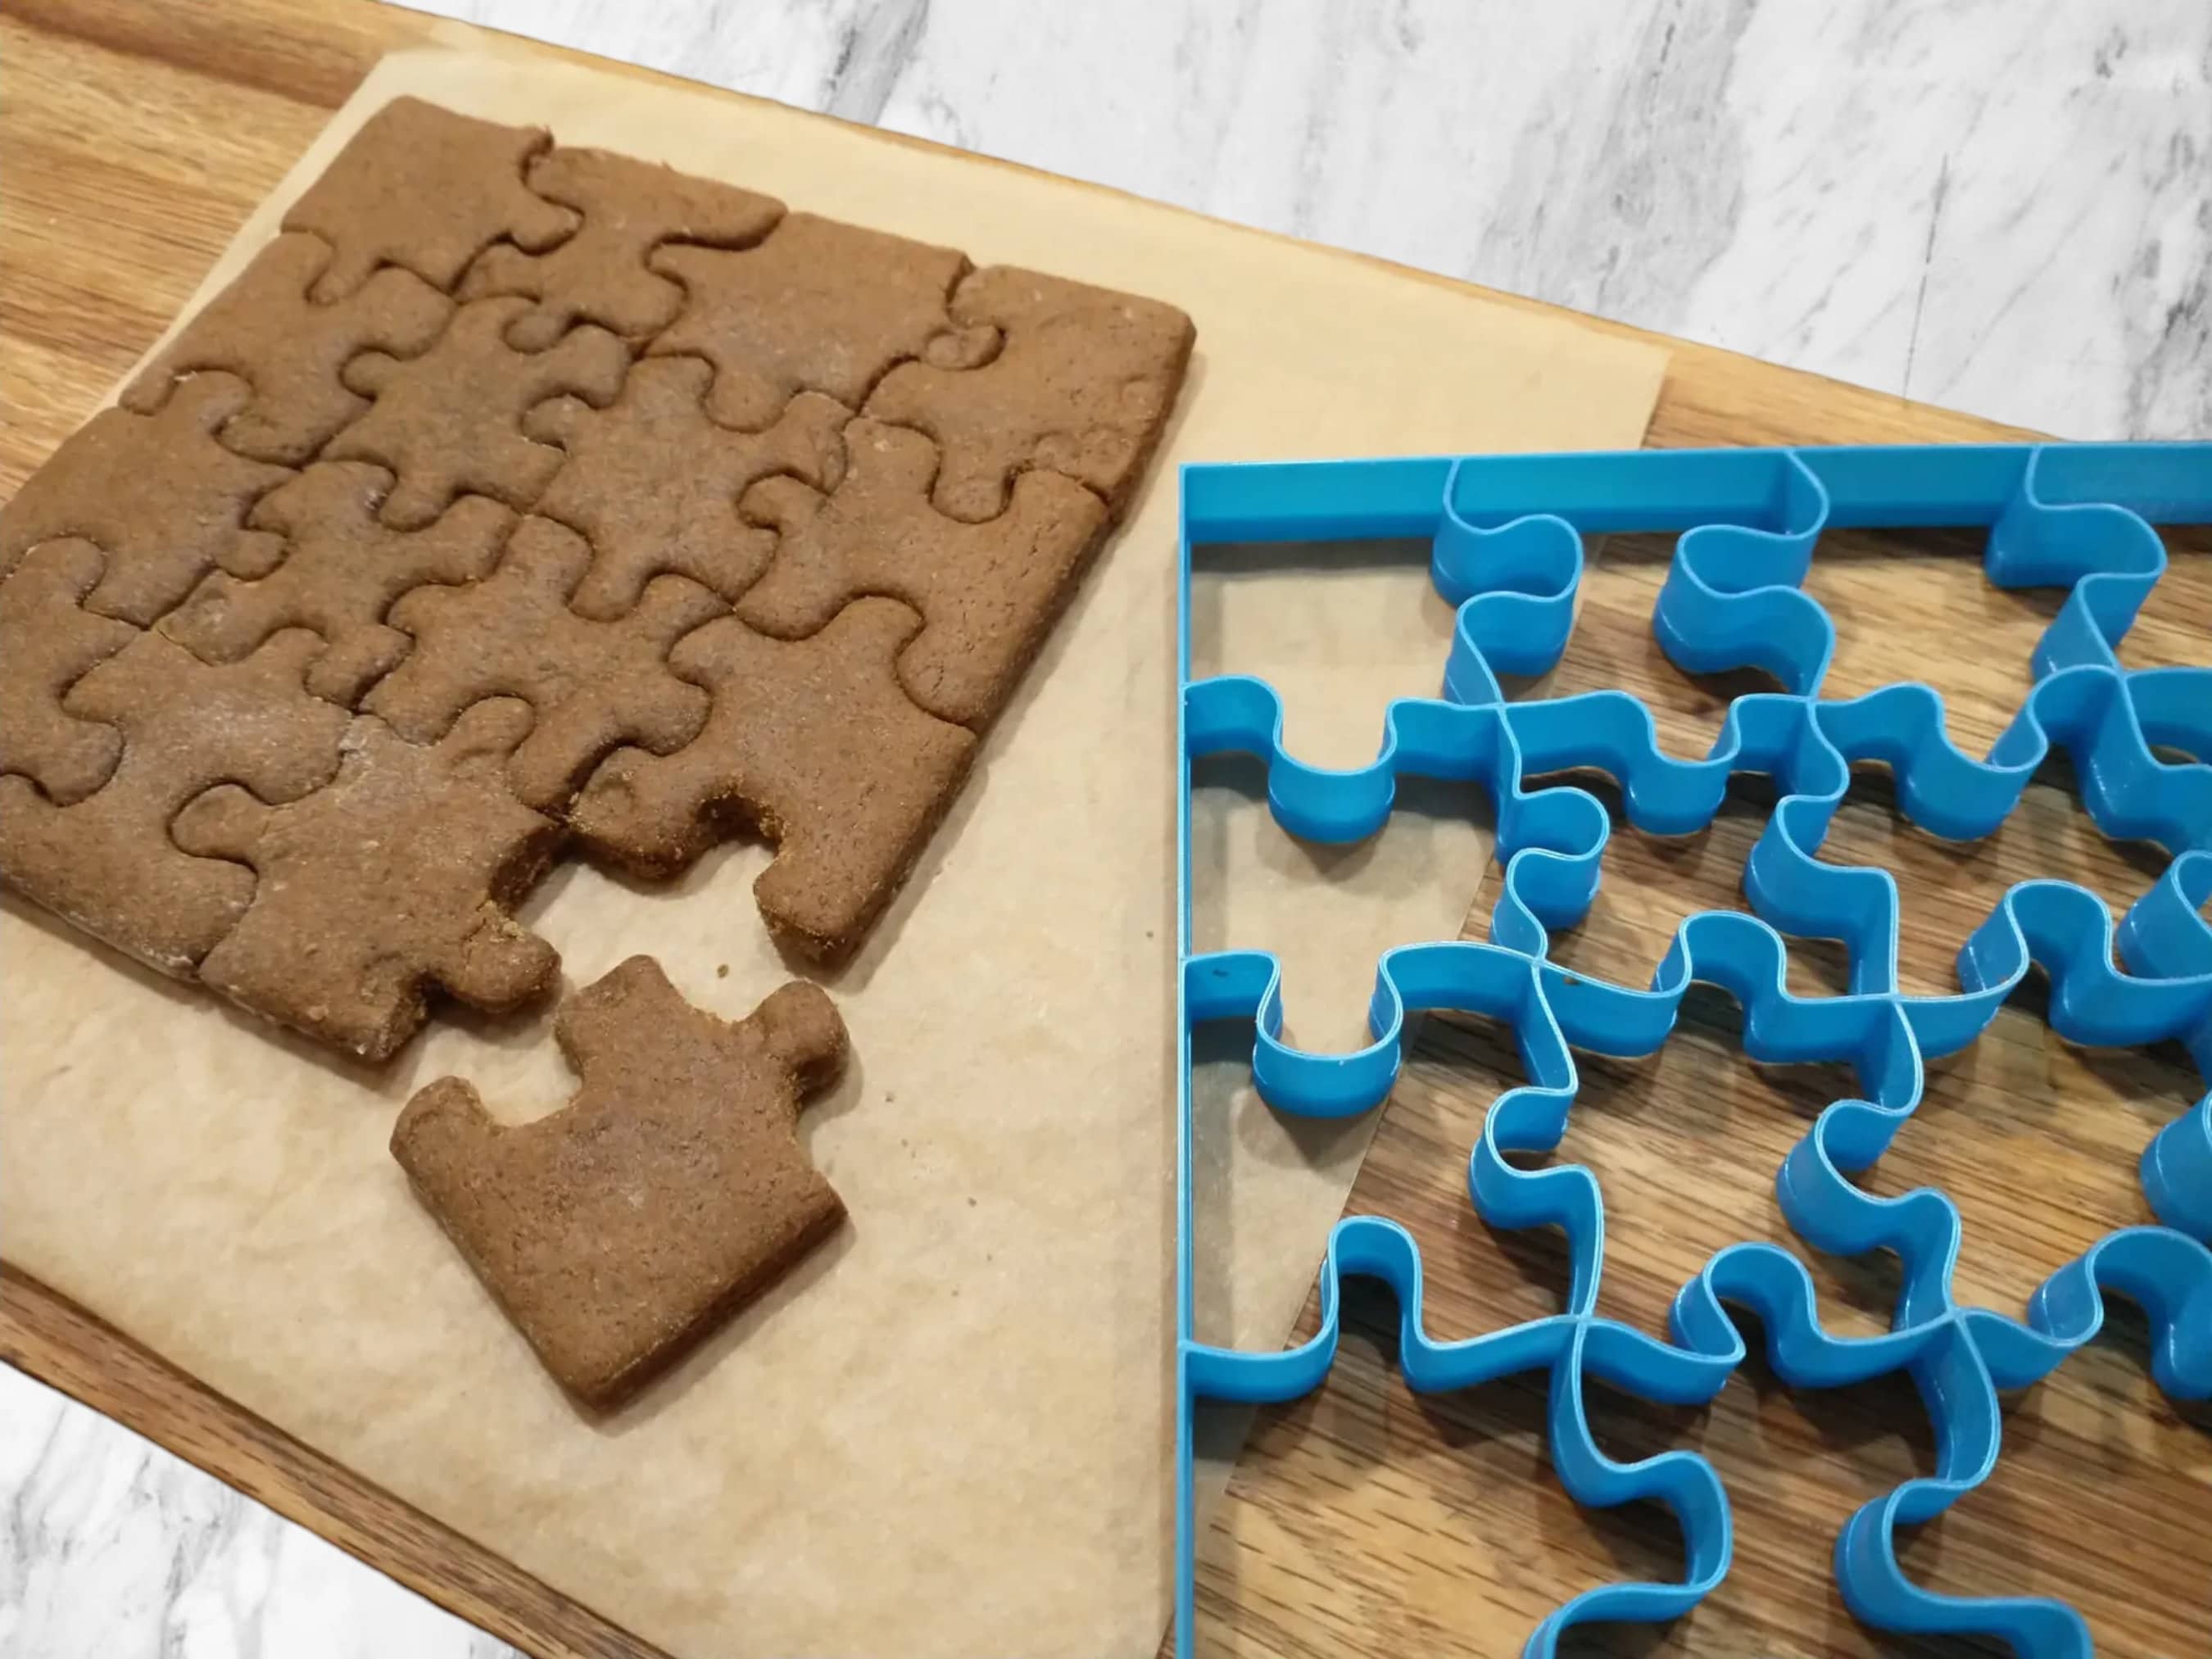 Cookies 100 Piece Boxed Puzzle - Shop !